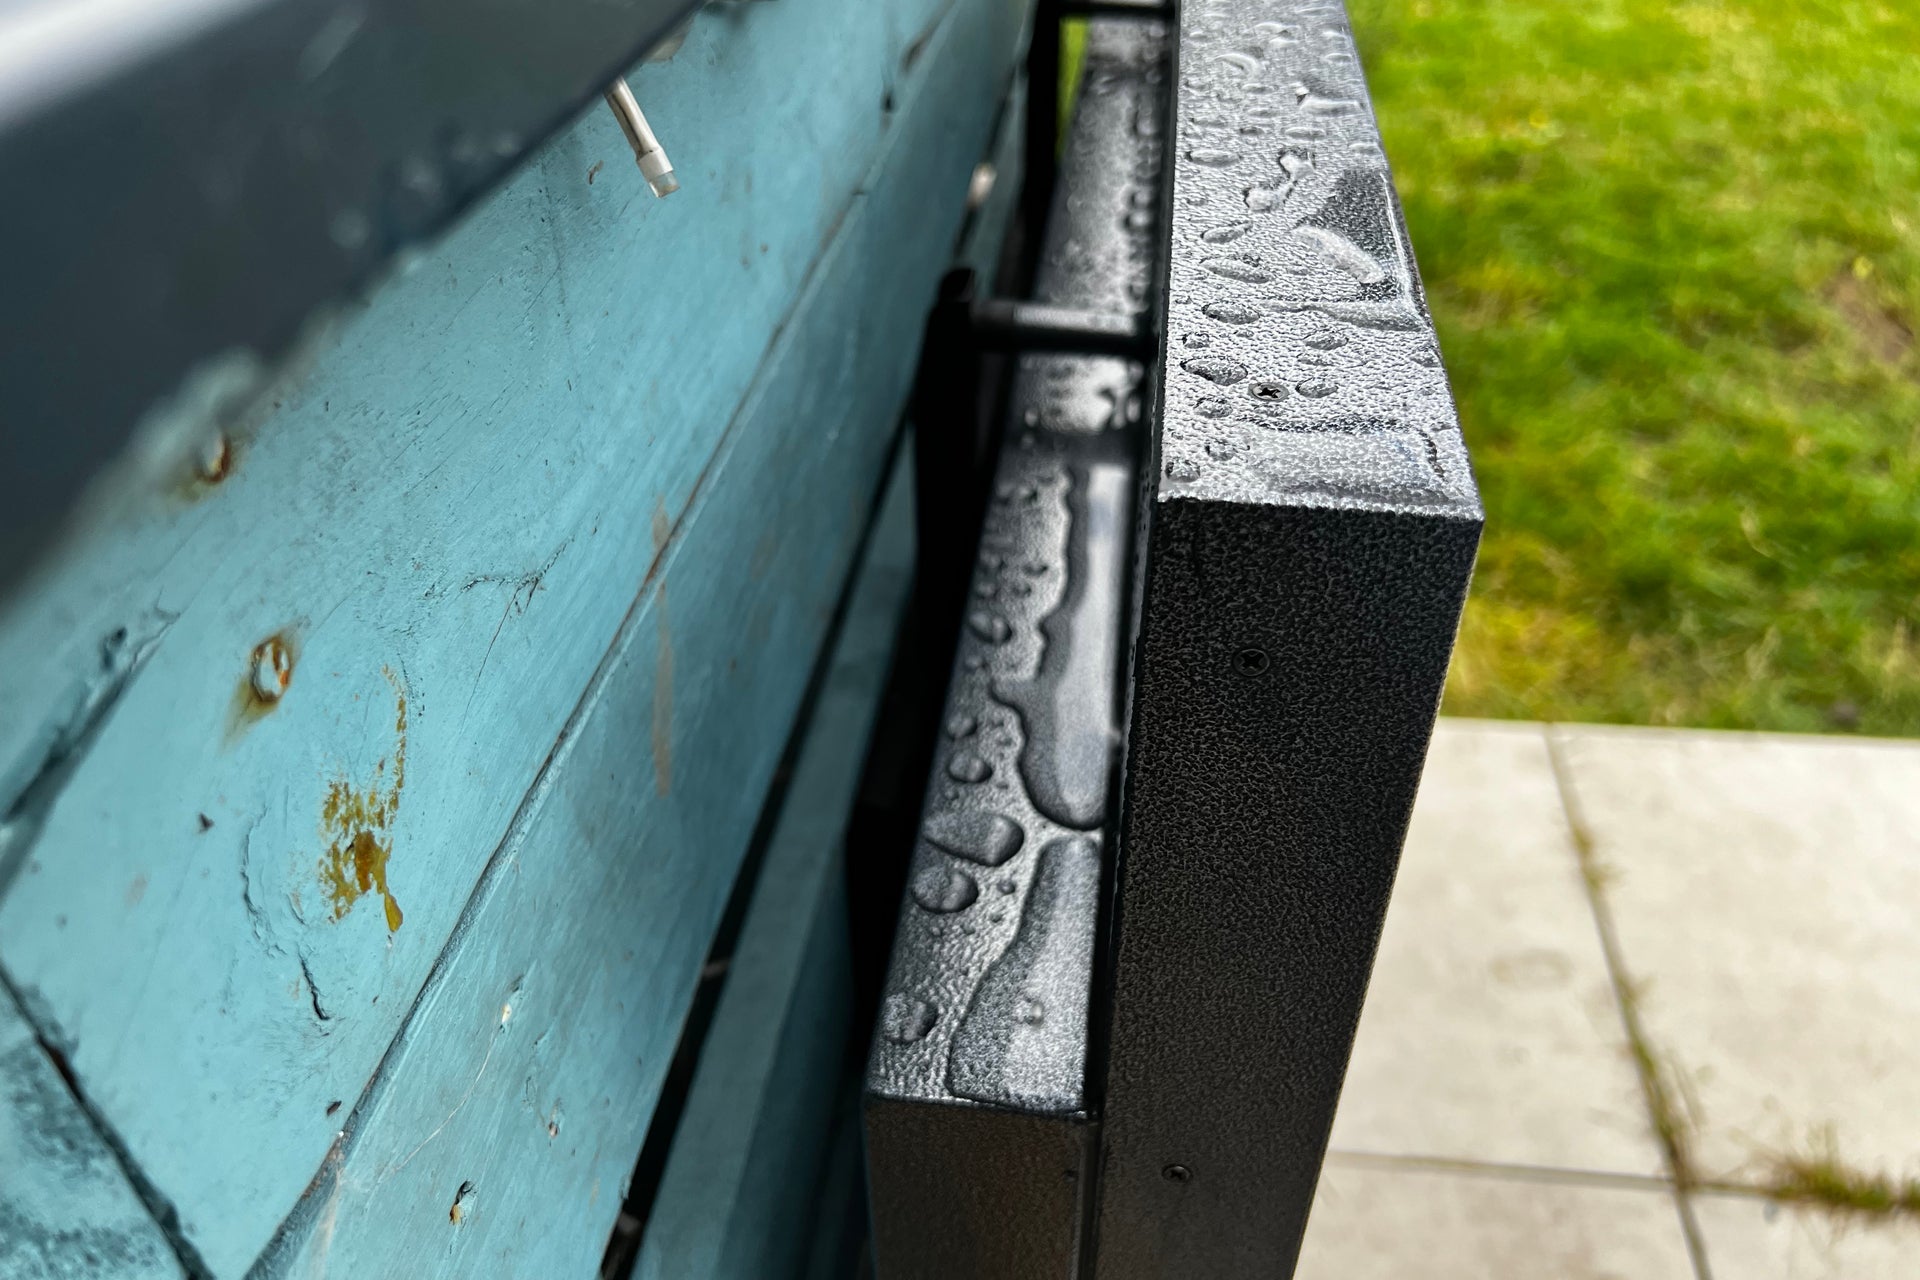 Sylvox Deck Pro Outdoor TV de 43 pulgadas mojado después de la lluvia